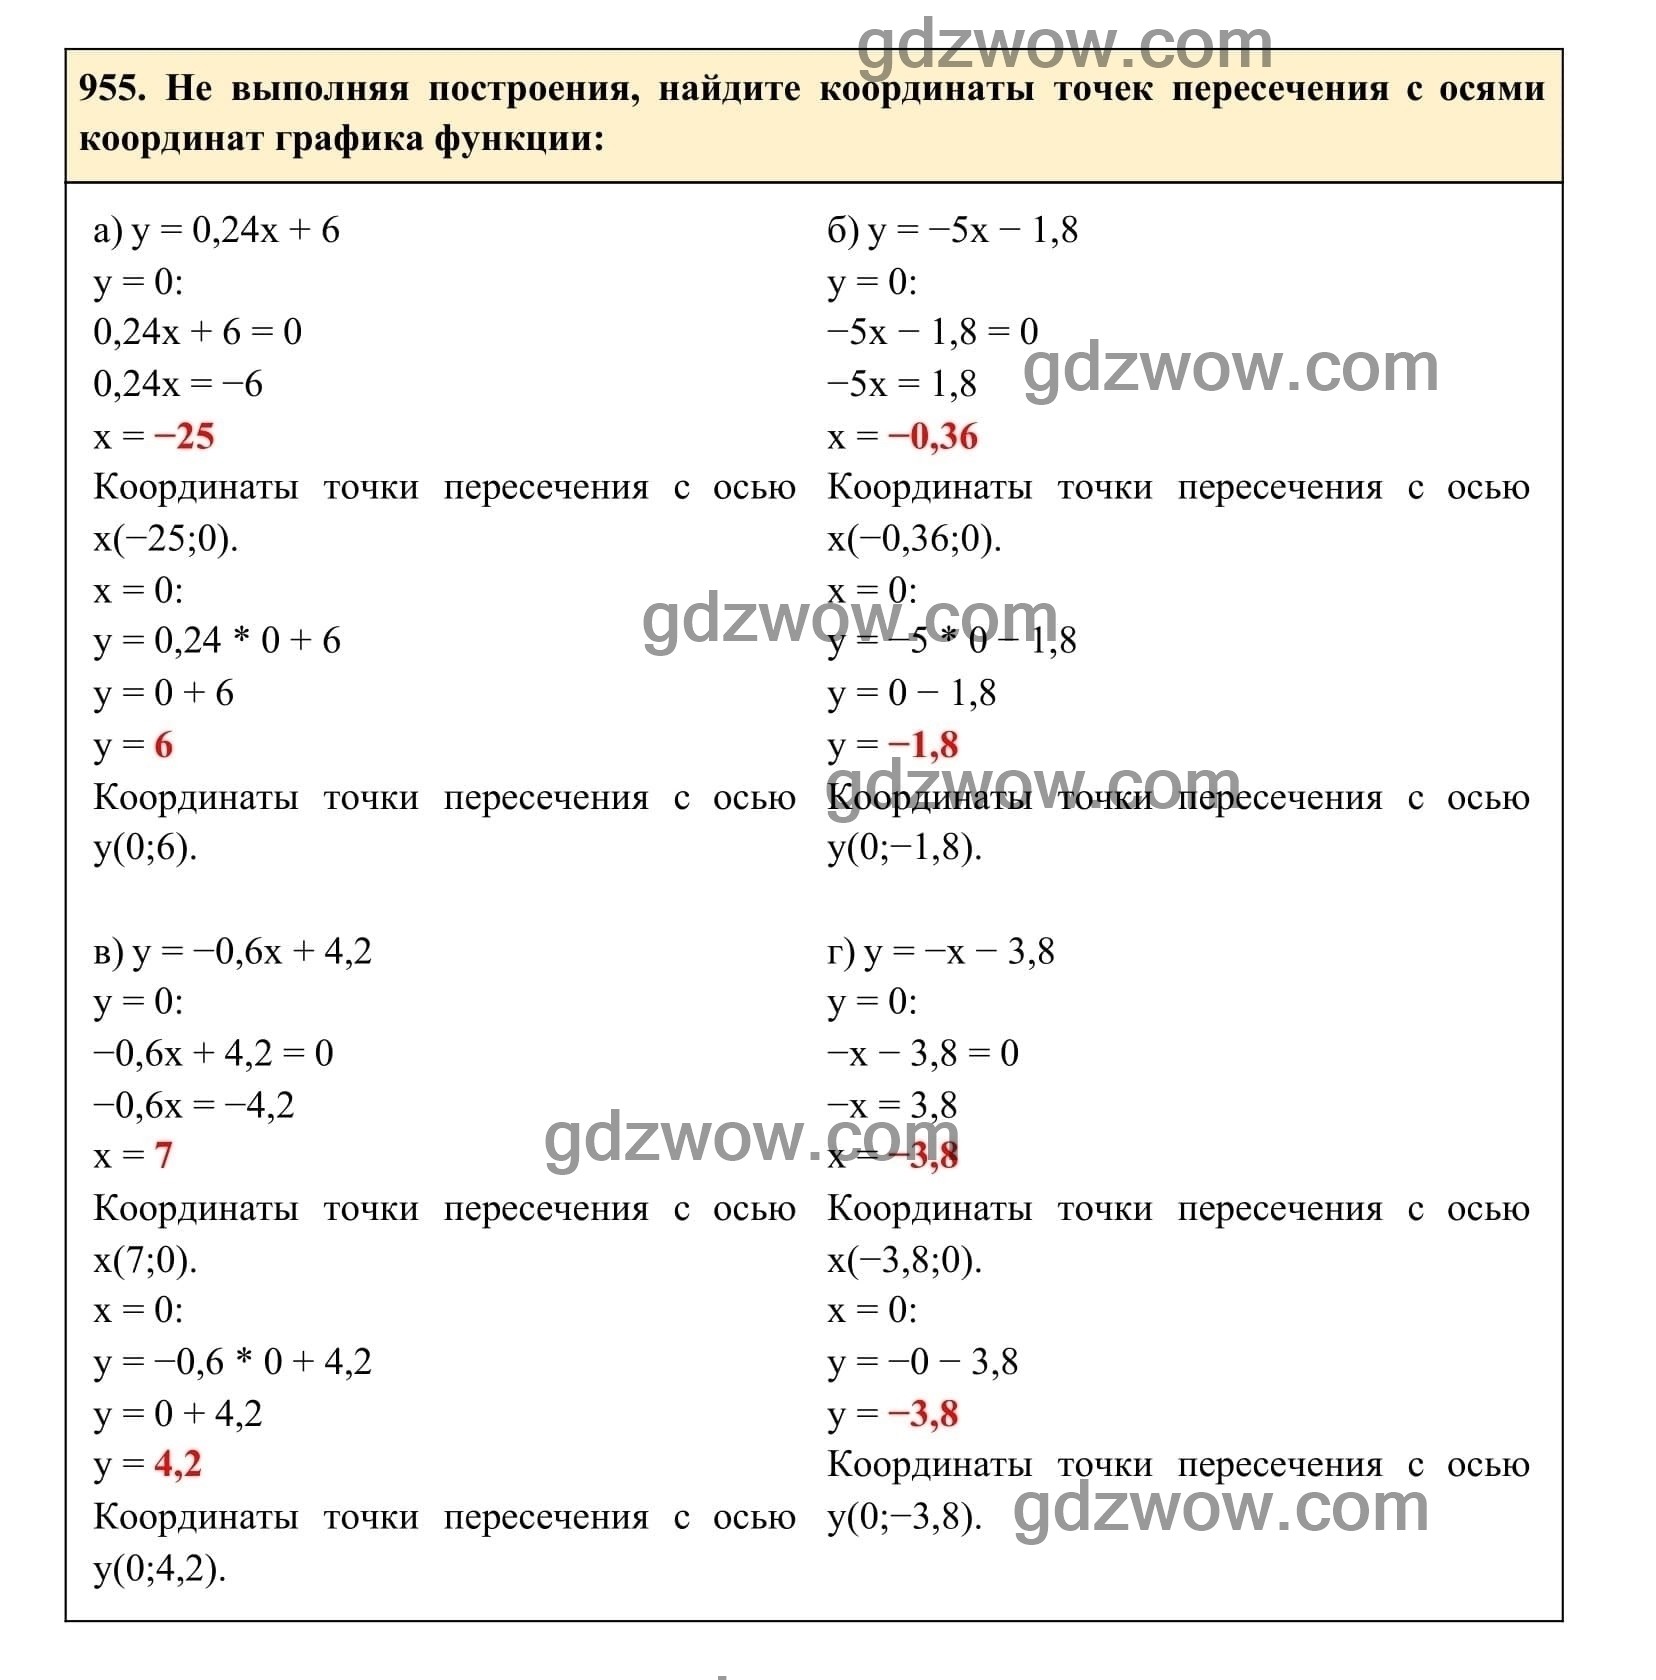 Упражнение 955 - ГДЗ по Алгебре 7 класс Учебник Макарычев (решебник) - GDZwow